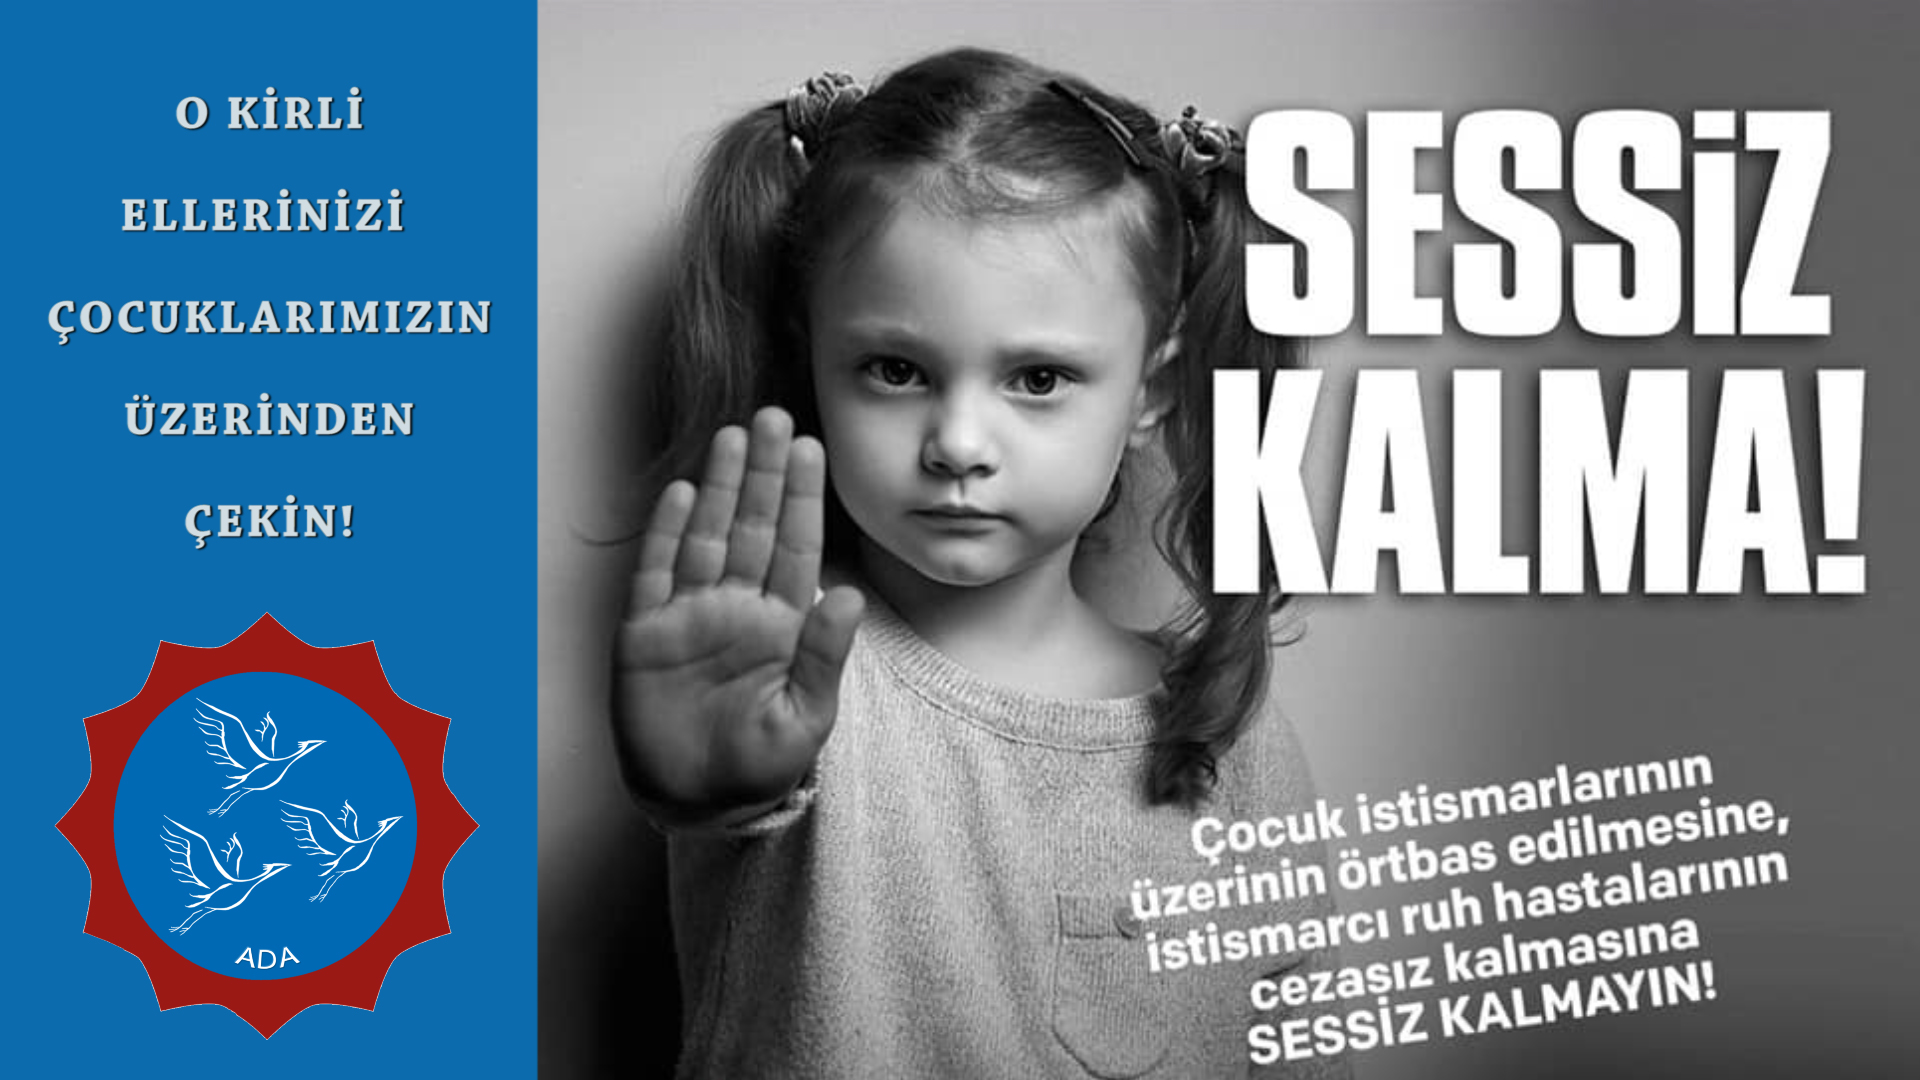 İstanbul Küçükçekmece'de yaşanan istismar olayına karşı ses oluyoruz!